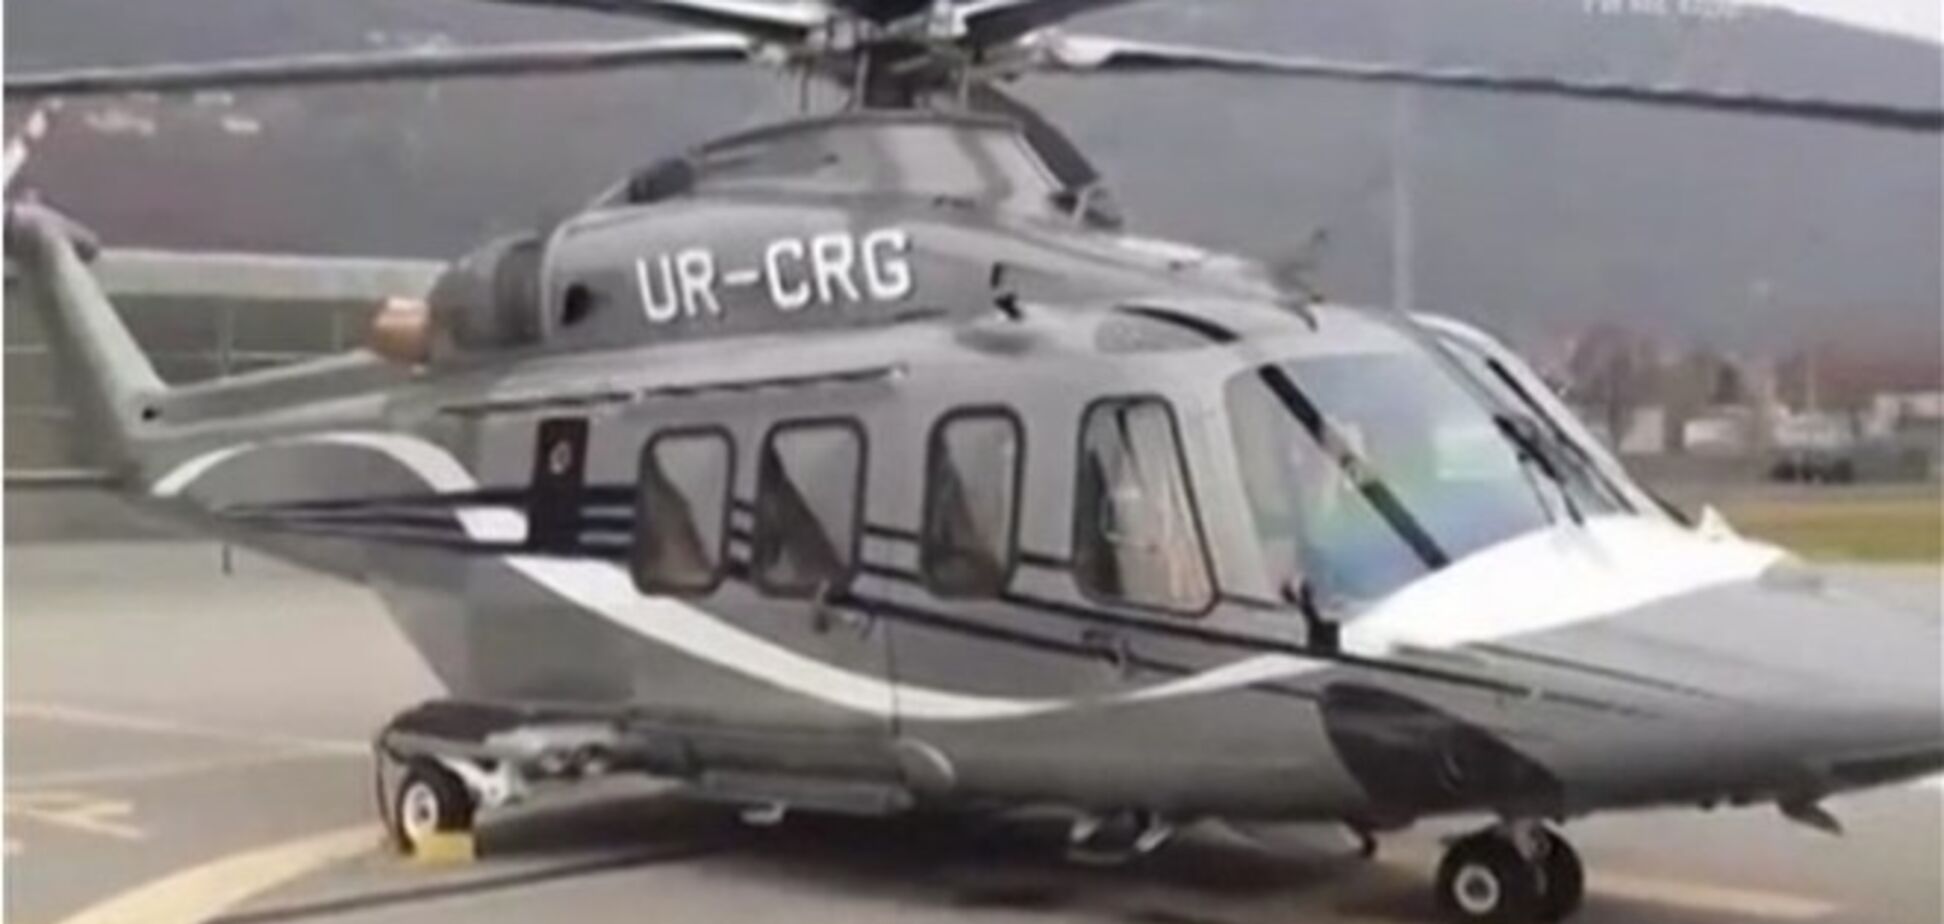 Использованный при побеге из Украины вертолет Януковича обнаружен в Нижнем Новгороде